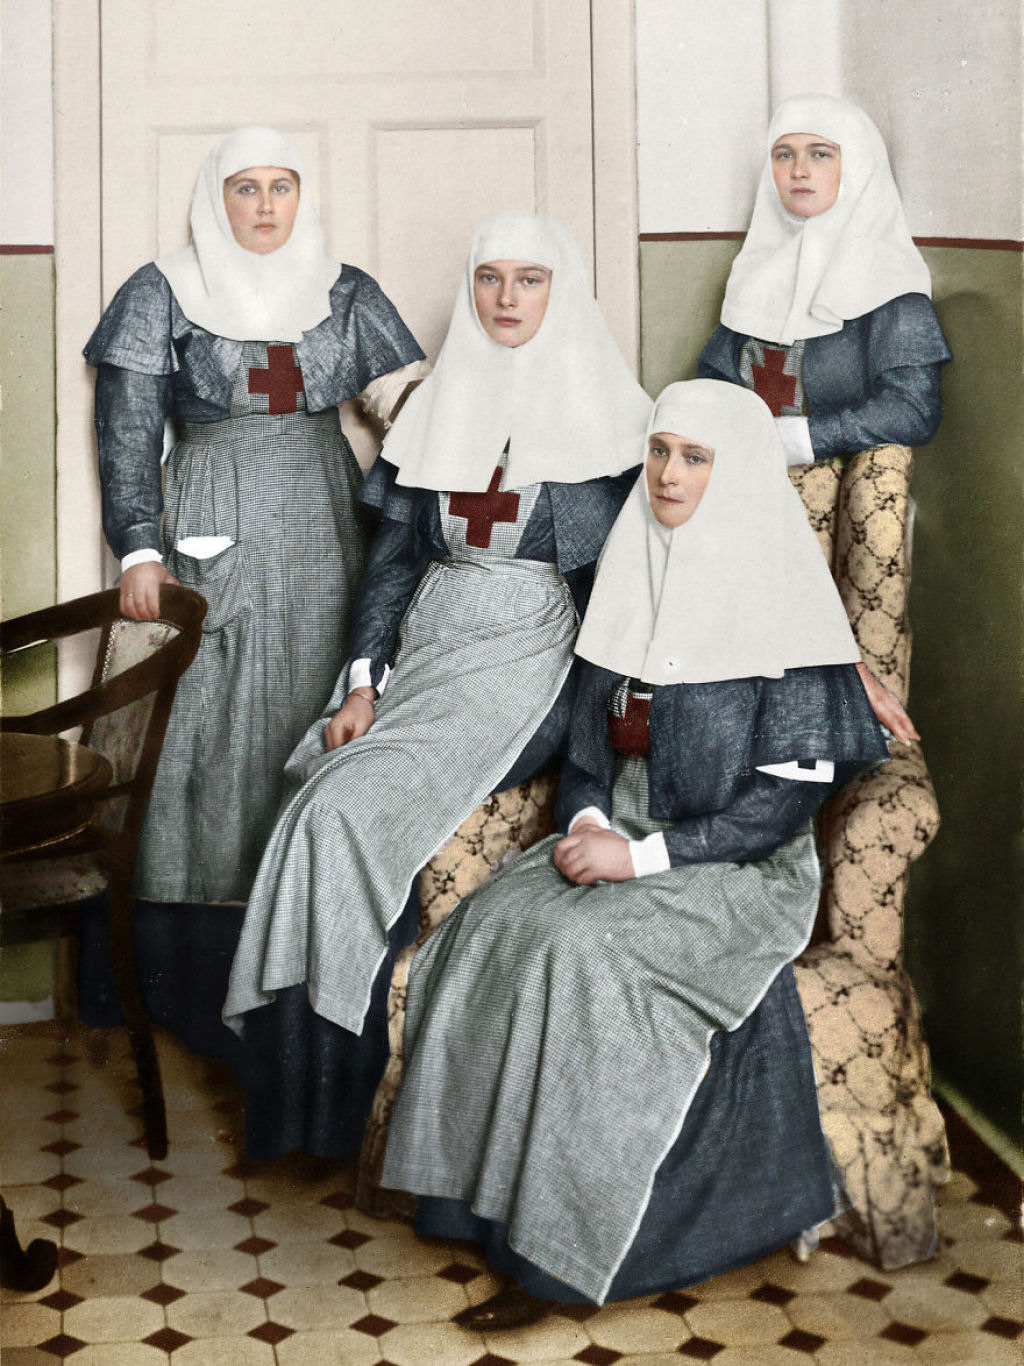 Fotos antigas colorizadas revelam a vida do povo russo entre 1900 e 1965 22